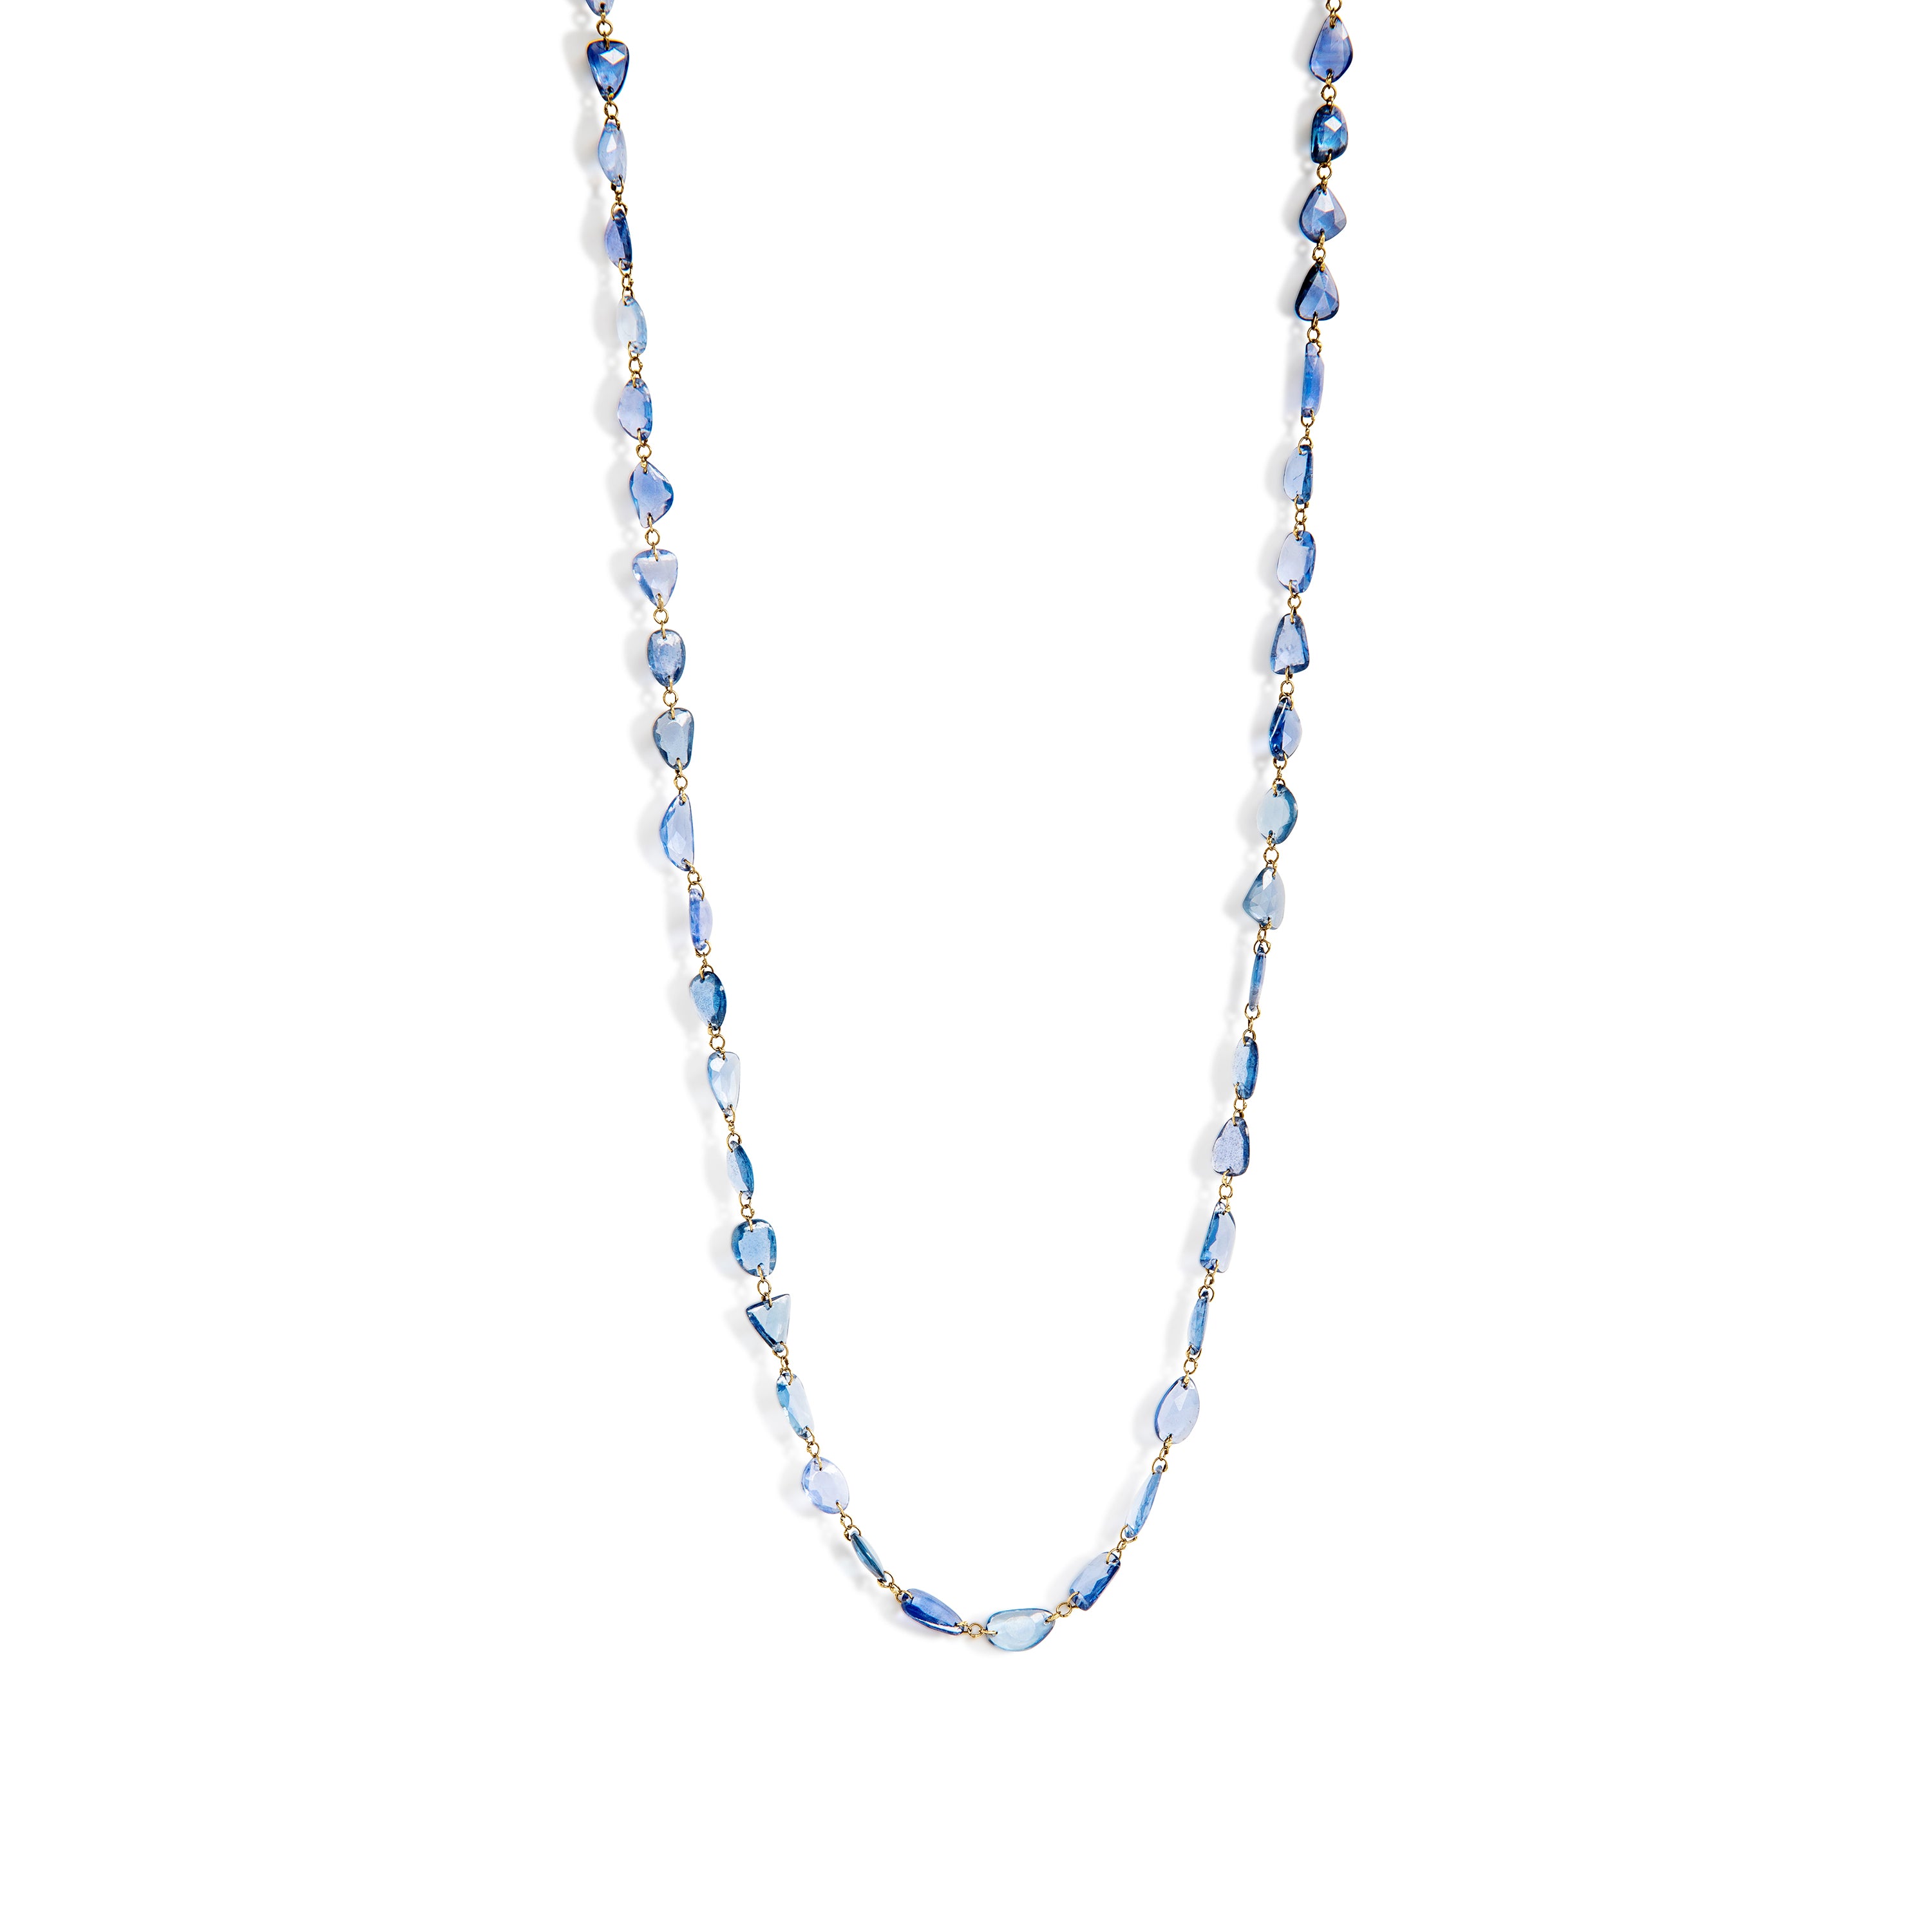  rose-cut blue sapphire necklace